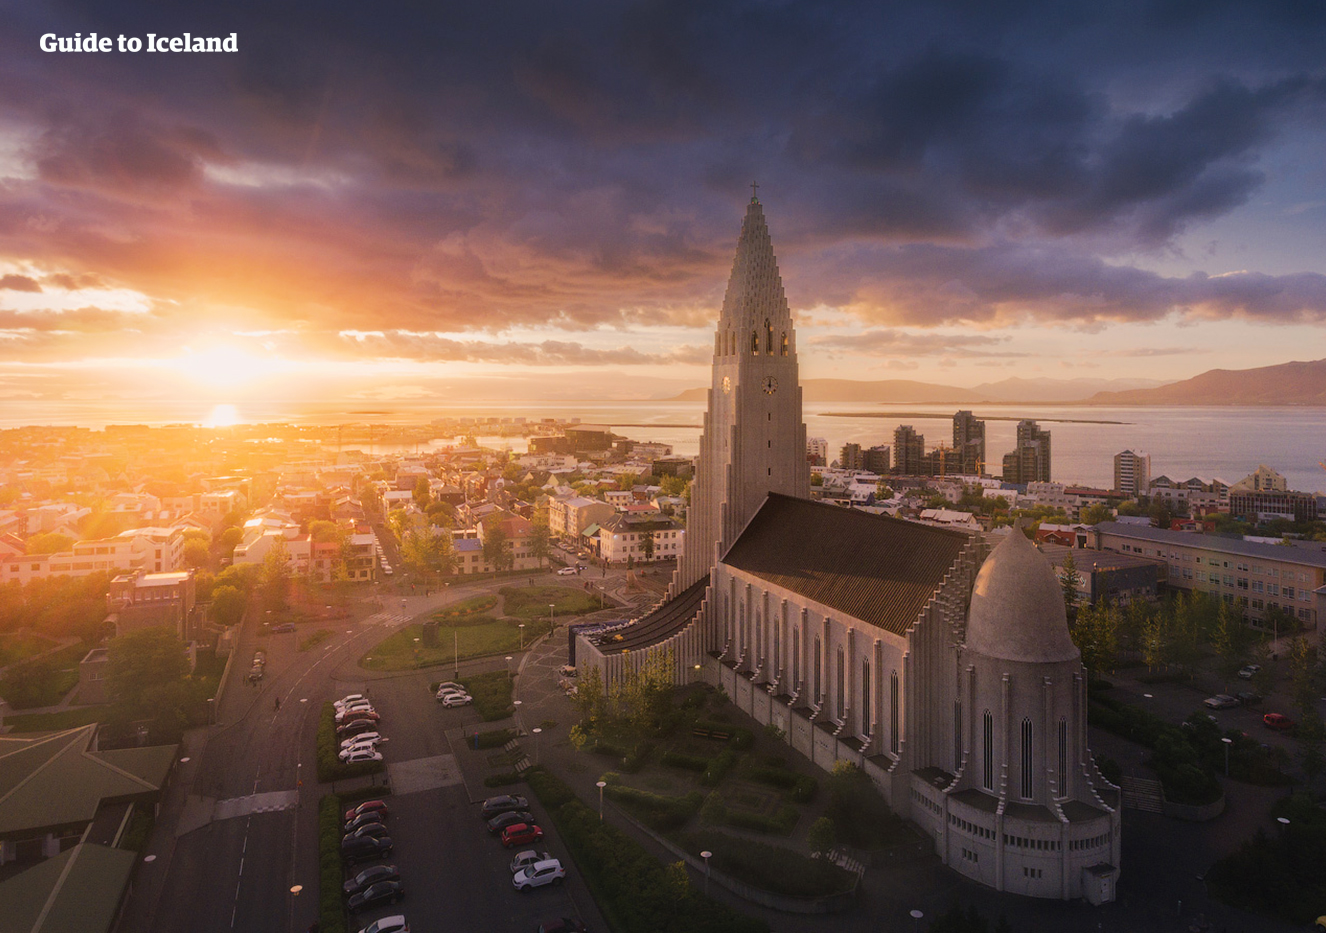 Miasto Reykjavík to wyjątkowa, nordycka stolica z niepowtarzalnym klimatem.